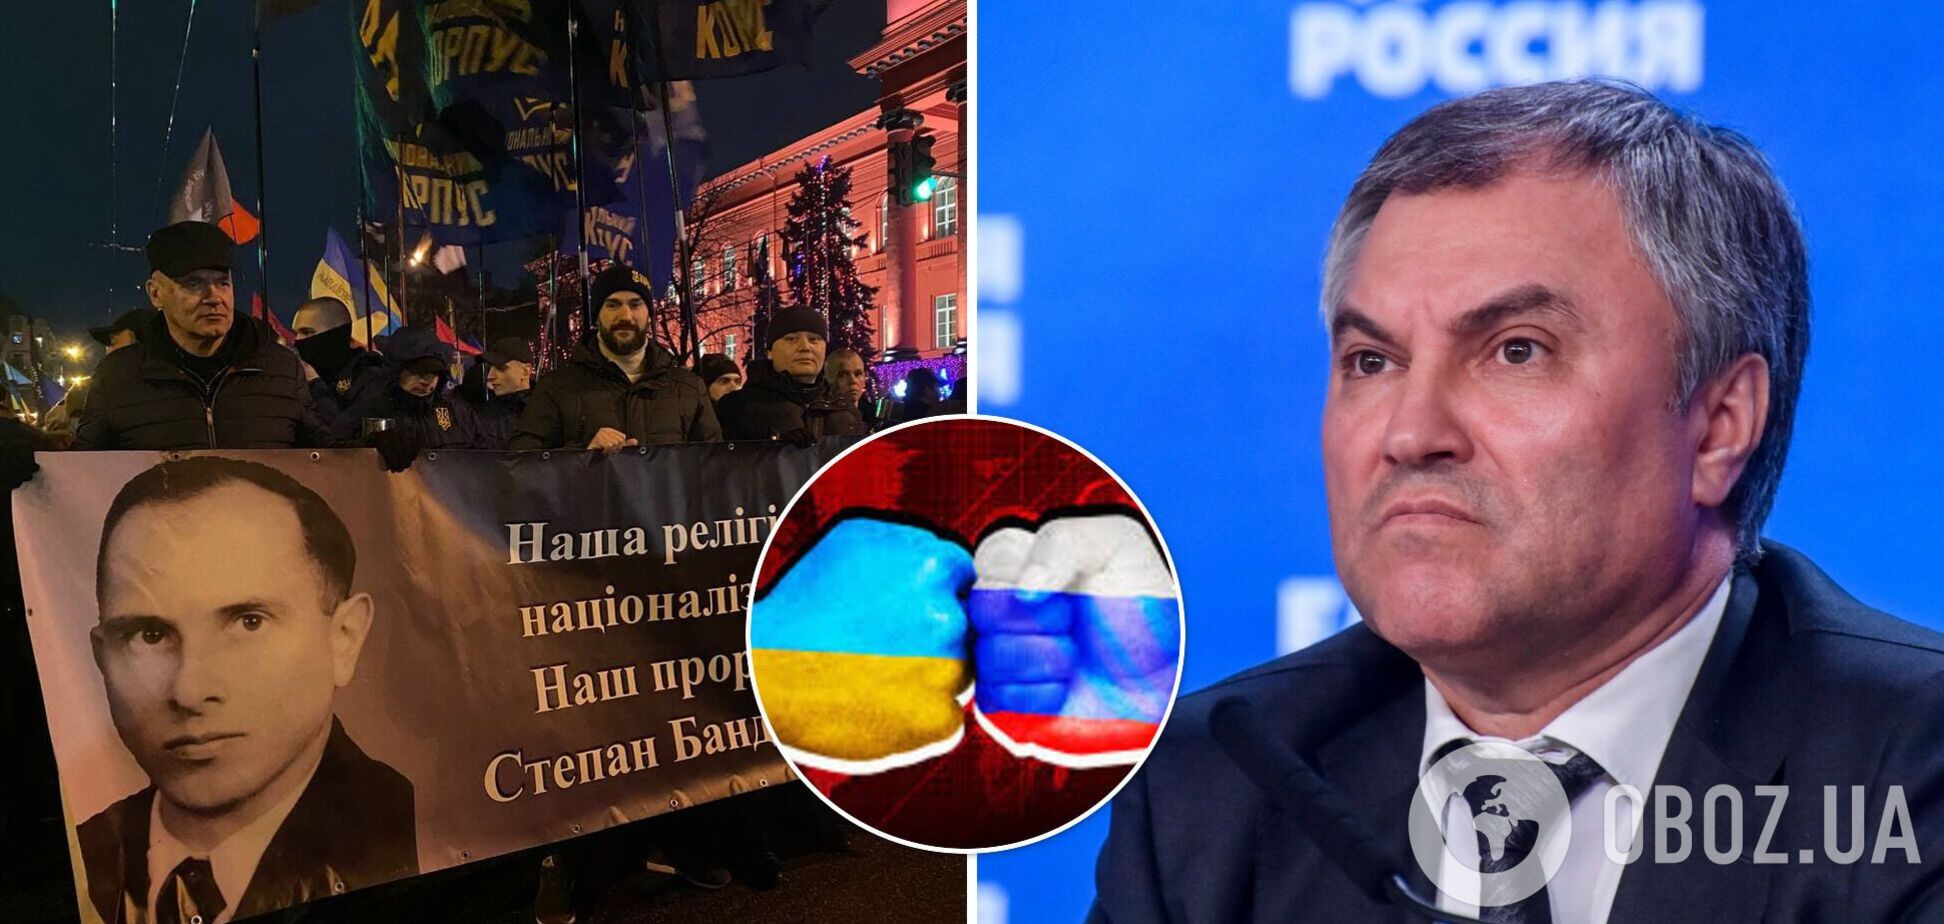 Спикер Госдумы РФ пригрозил Украине санкциями из-за марша Бандеры в Киеве и получил ответ